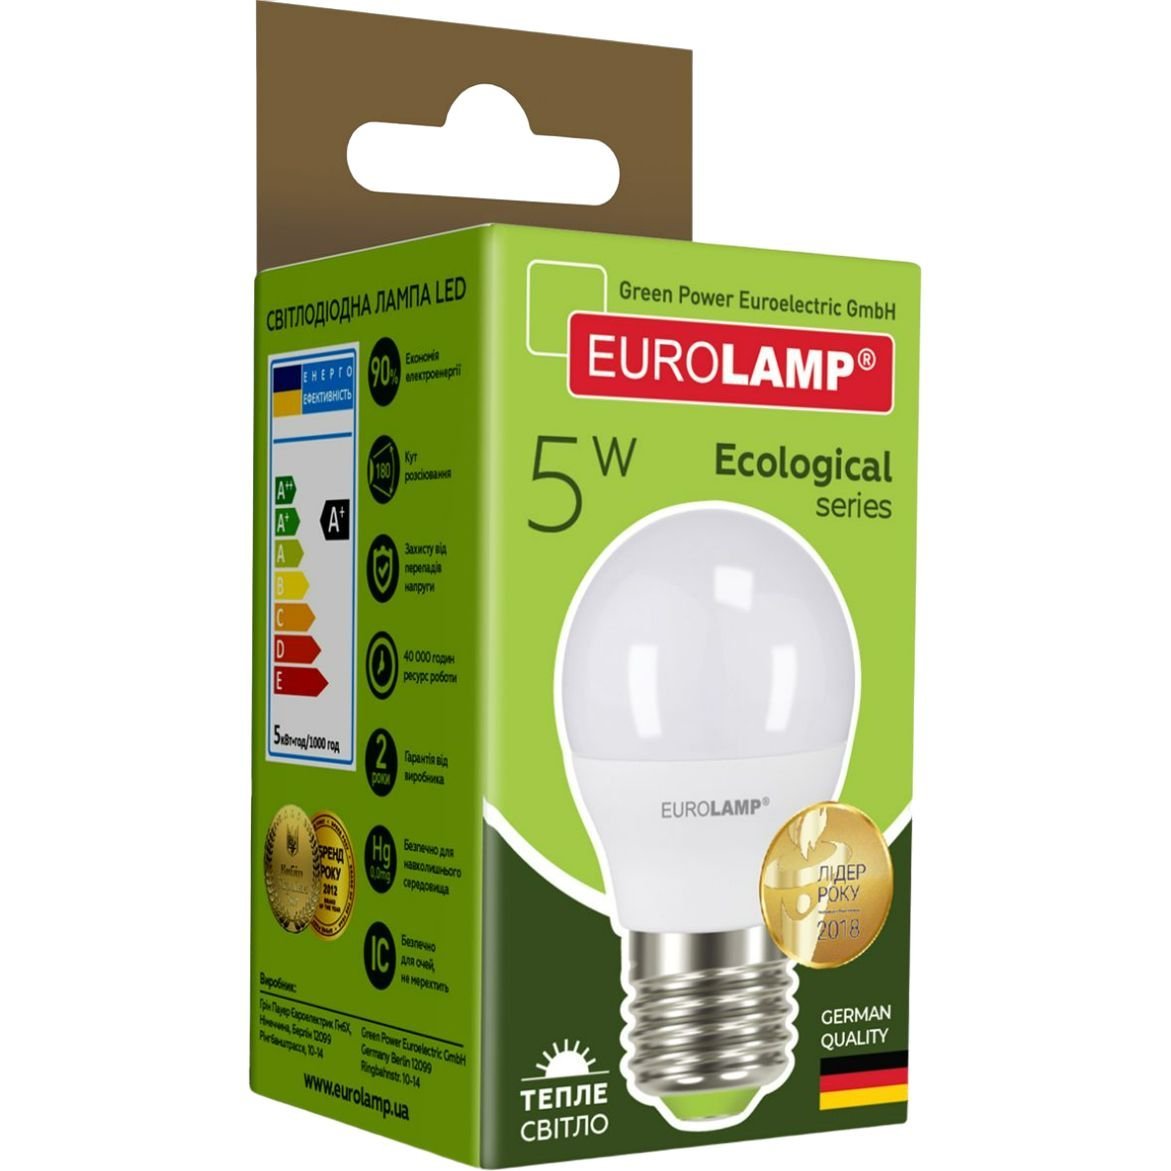 Світлодіодна лампа Eurolamp LED Ecological Series, G45, 5W, E27, 3000K (LED-G45-05273(P)) - фото 4